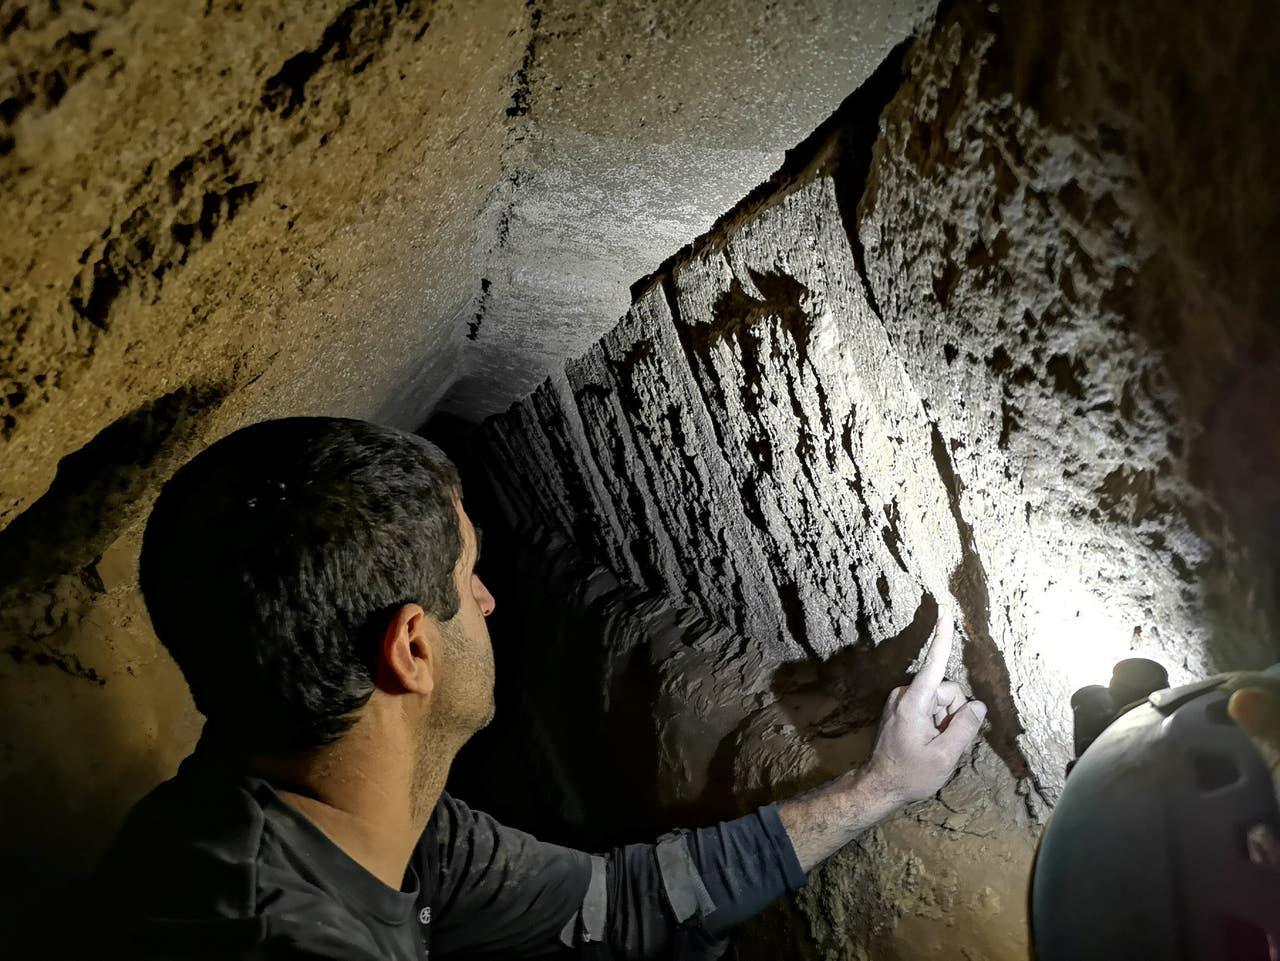 Акведук Понтия Пилата: что нового узнали археологи о древнем водопроводе Иерусалима?